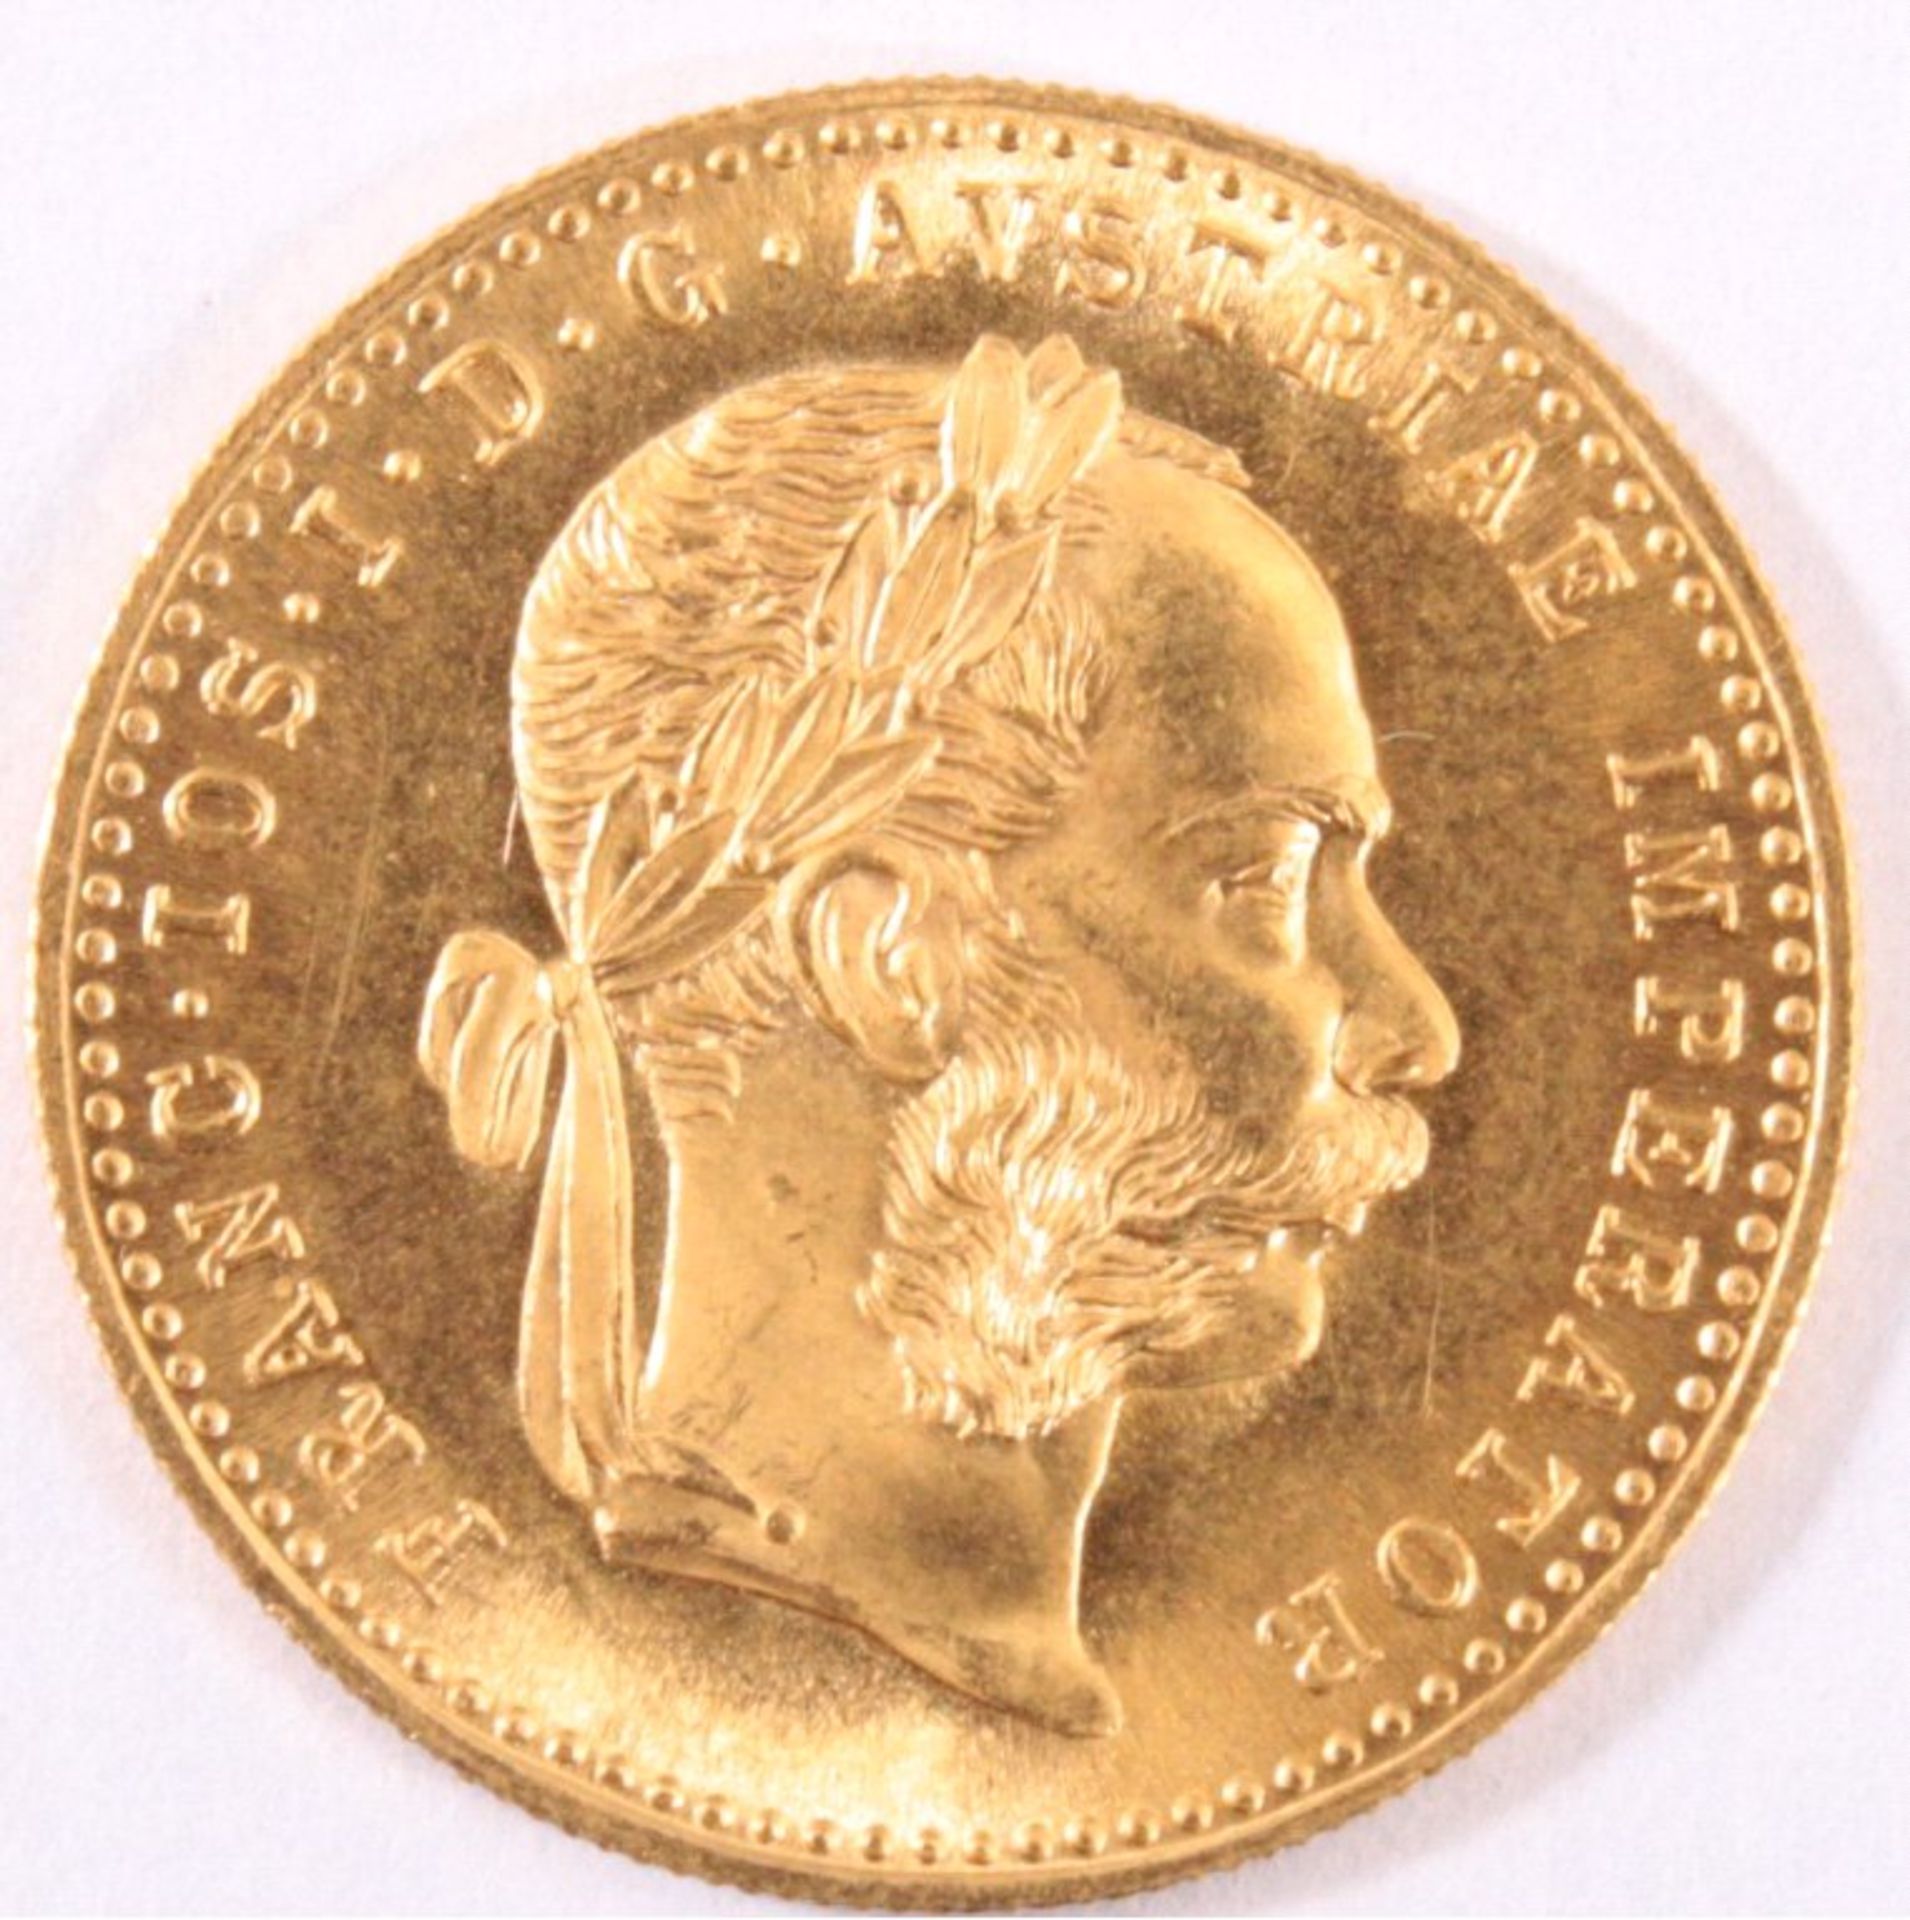 1 Dukaten Goldmünze Österreich
 1 Dukaten Österreich 1915
 Gewicht: 3,49g	
 Goldgehalt: 986